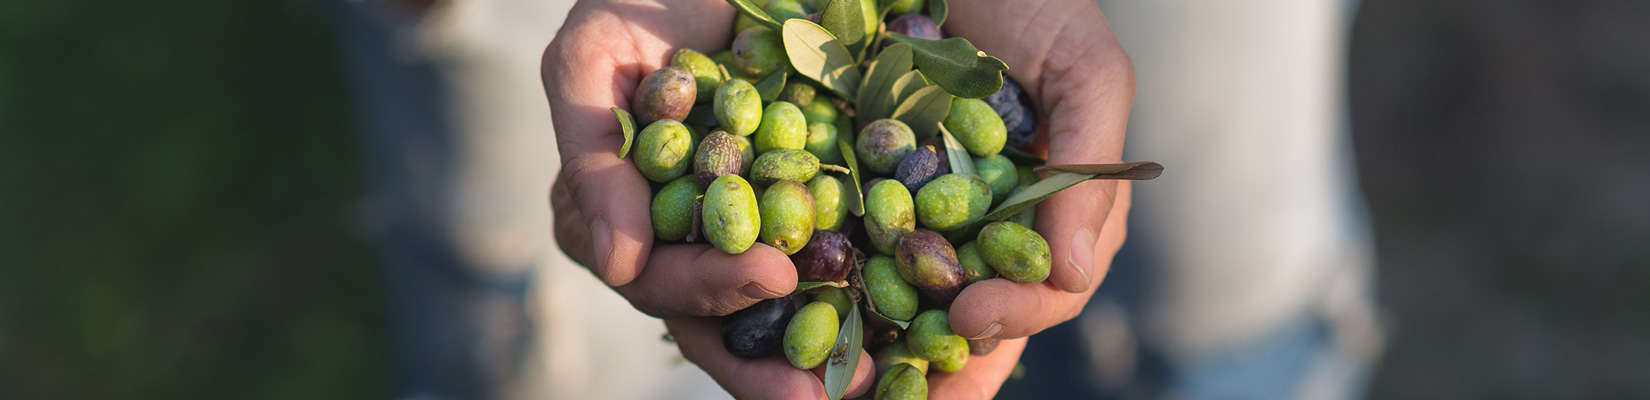 les bienfaits de l'huile d'olive